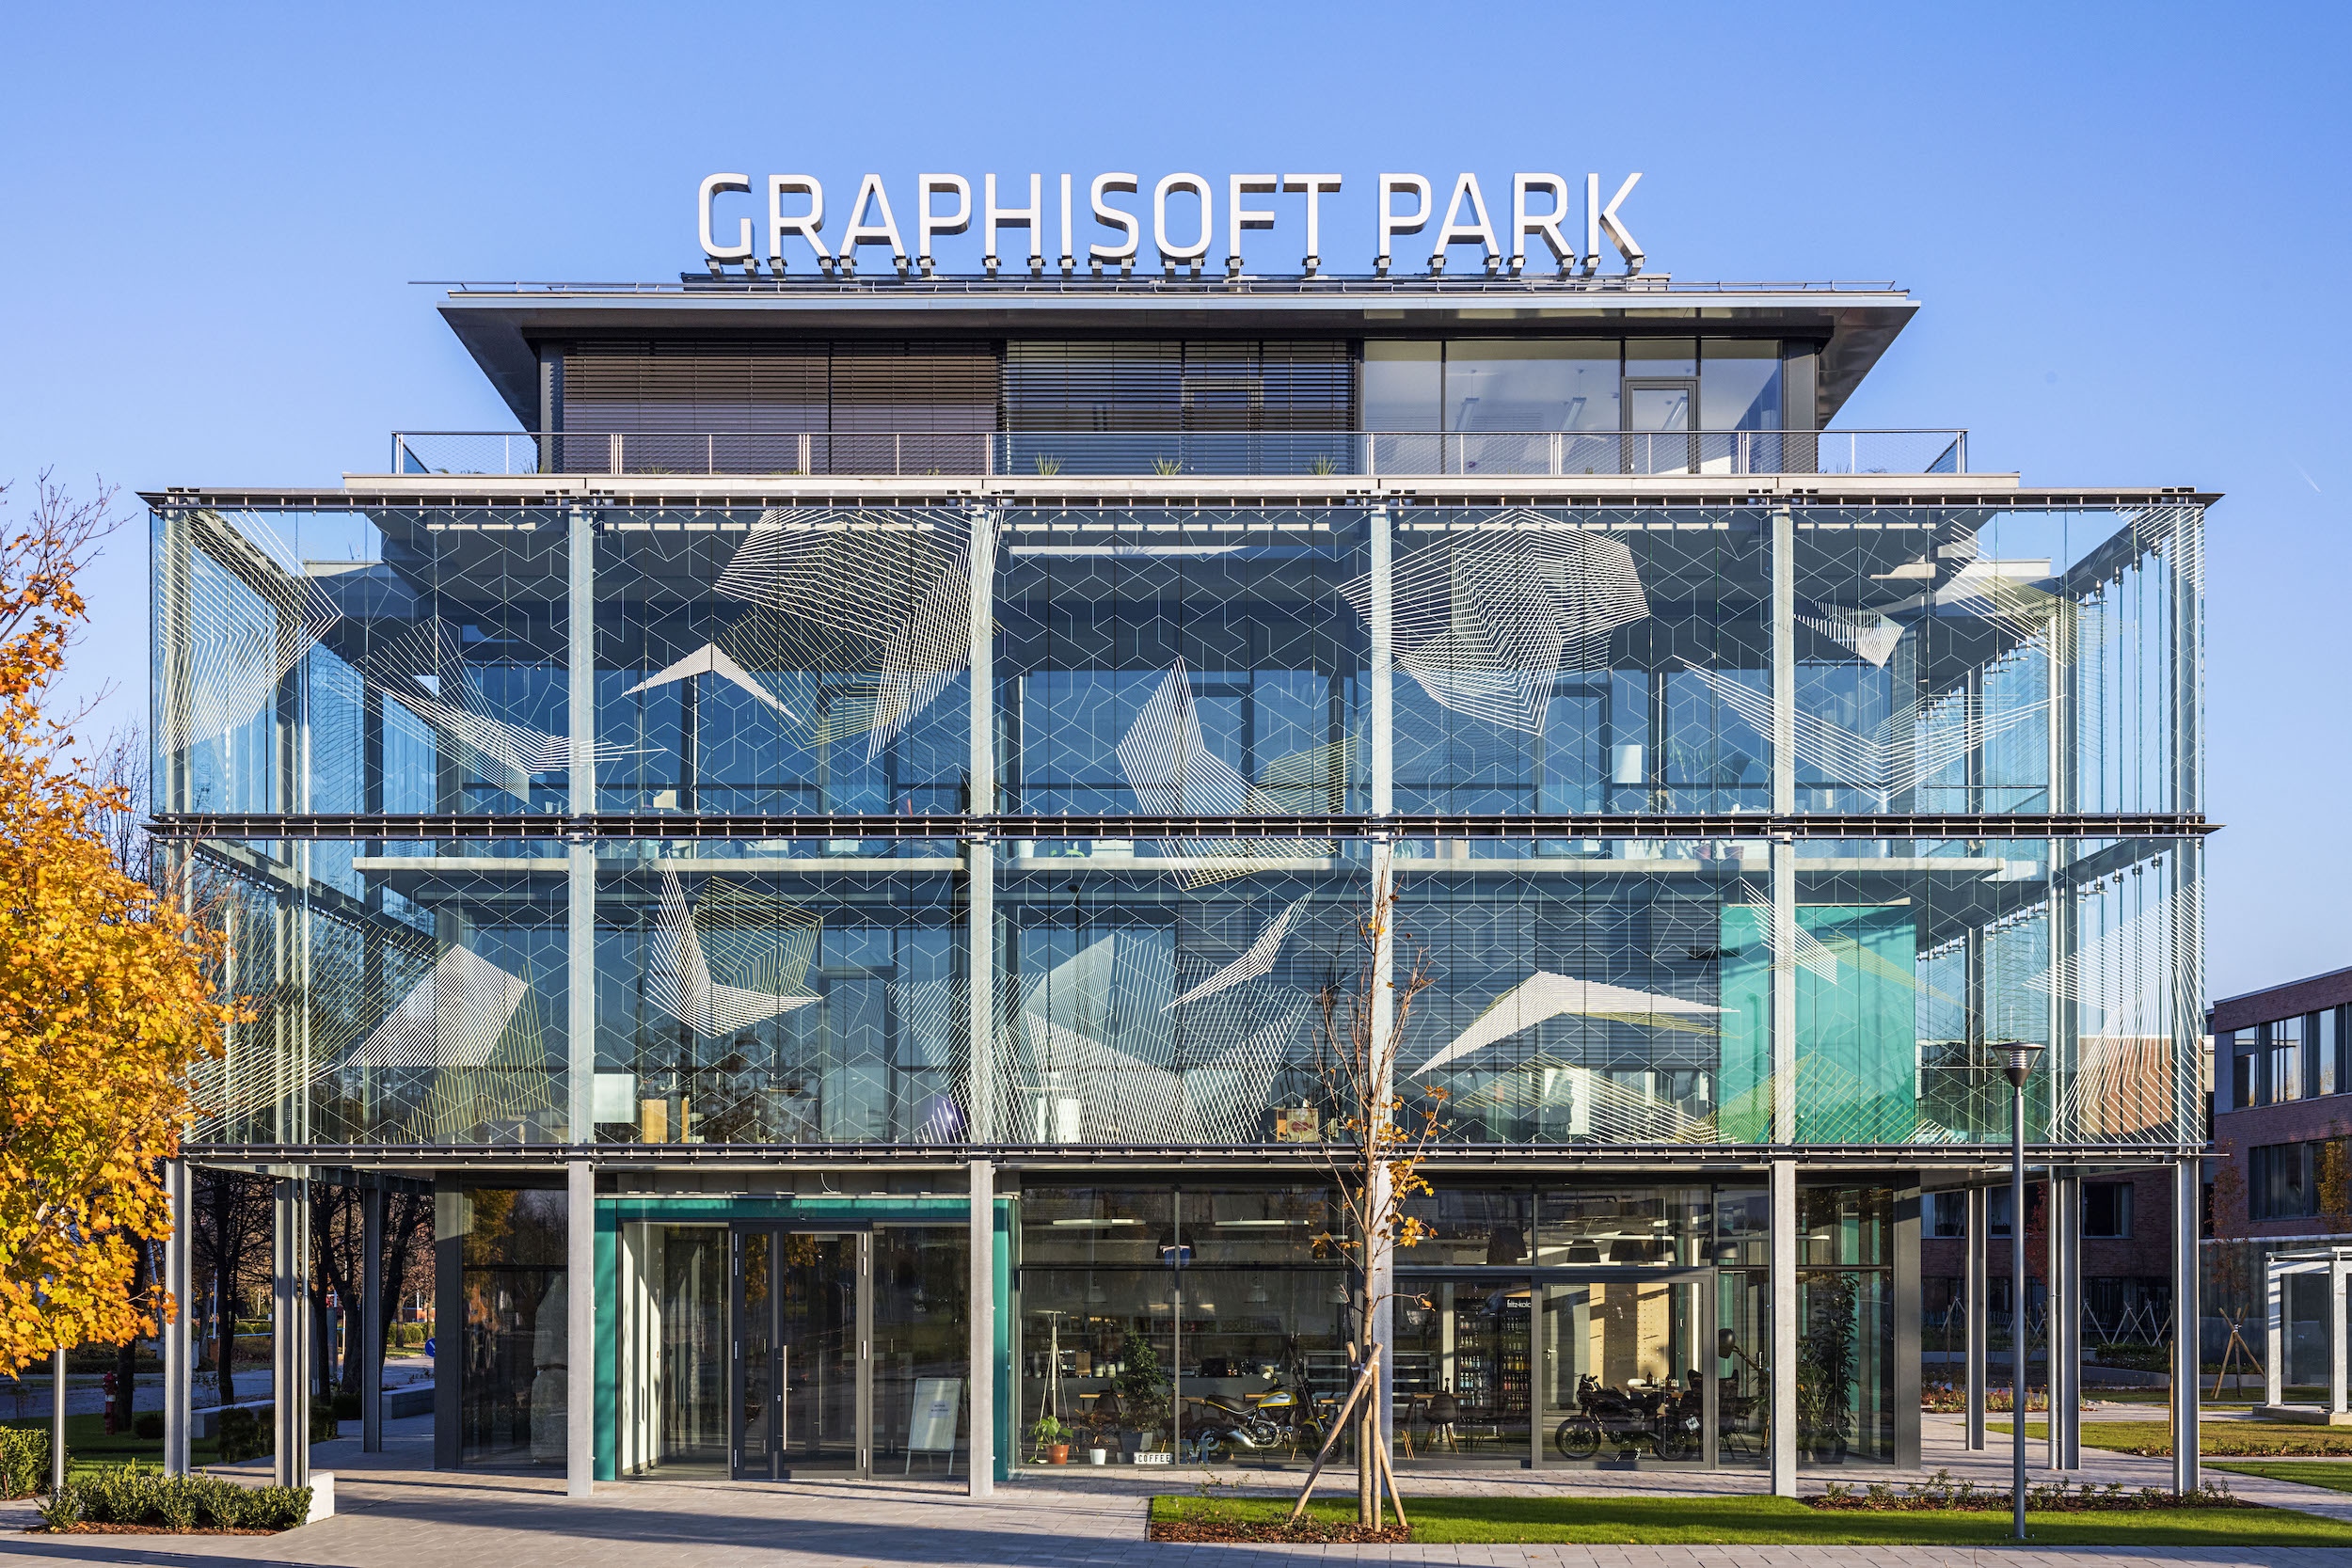 Garphisoft Park Fogadóépület, üveghomlokzat-design – Fotó: Bujnovszky Tamás